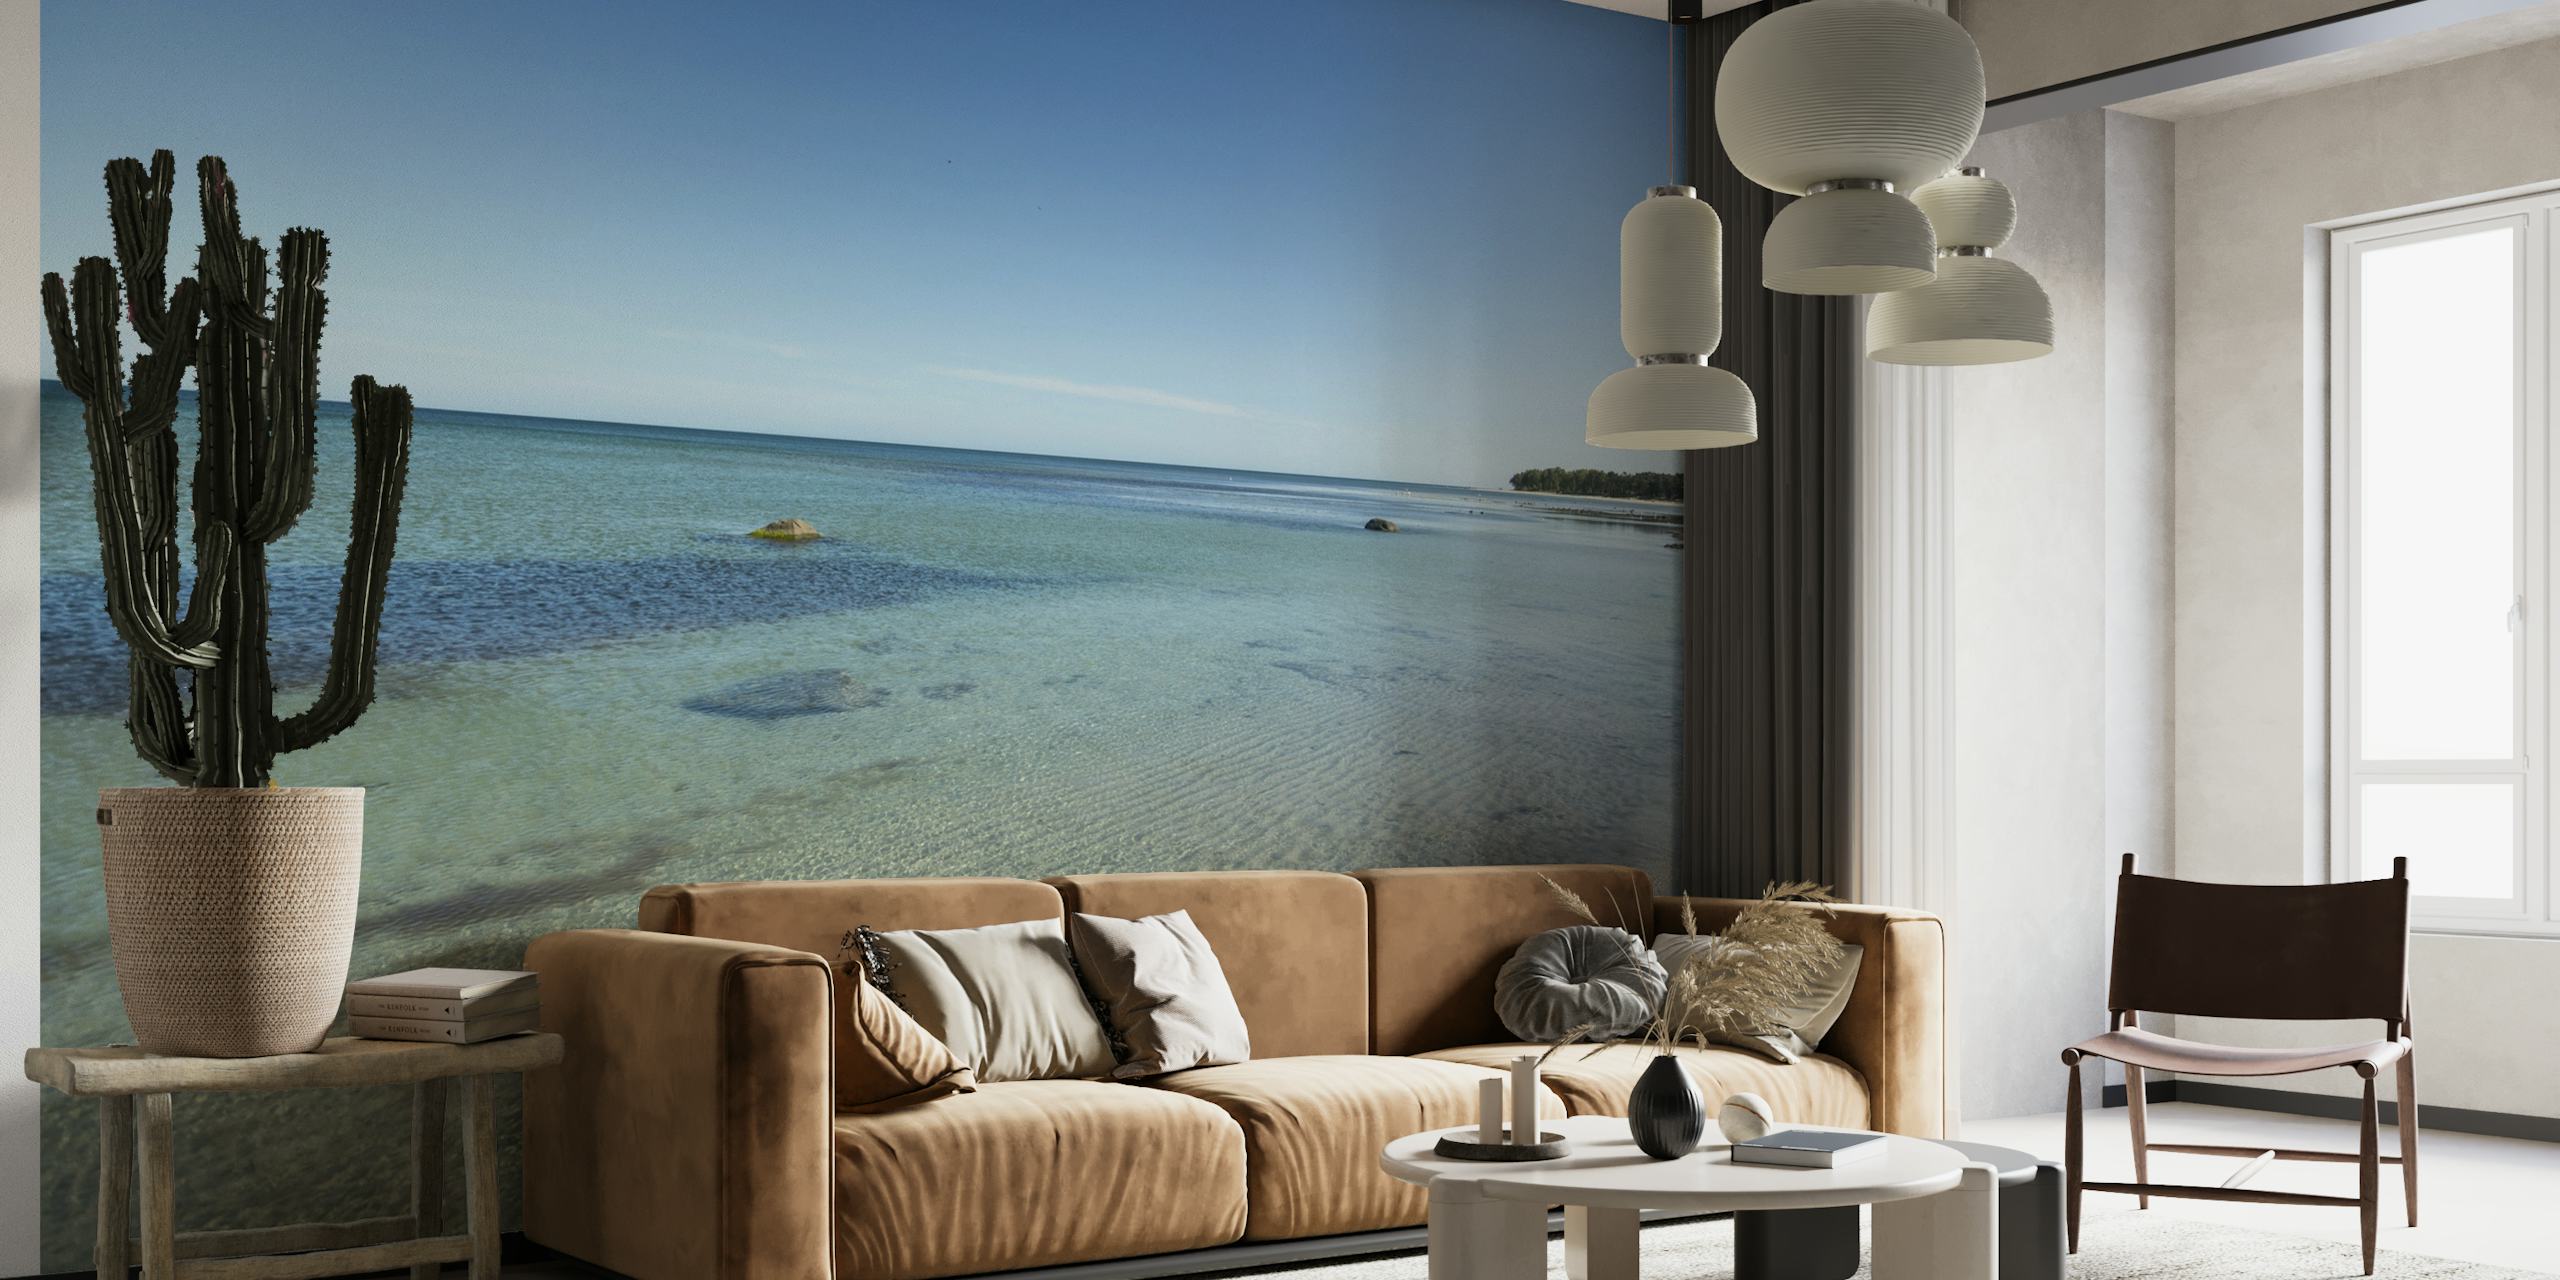 Fototapete für einen ruhigen Strand mit klarem Wasser und sandiger Küste auf der Insel Bornholm